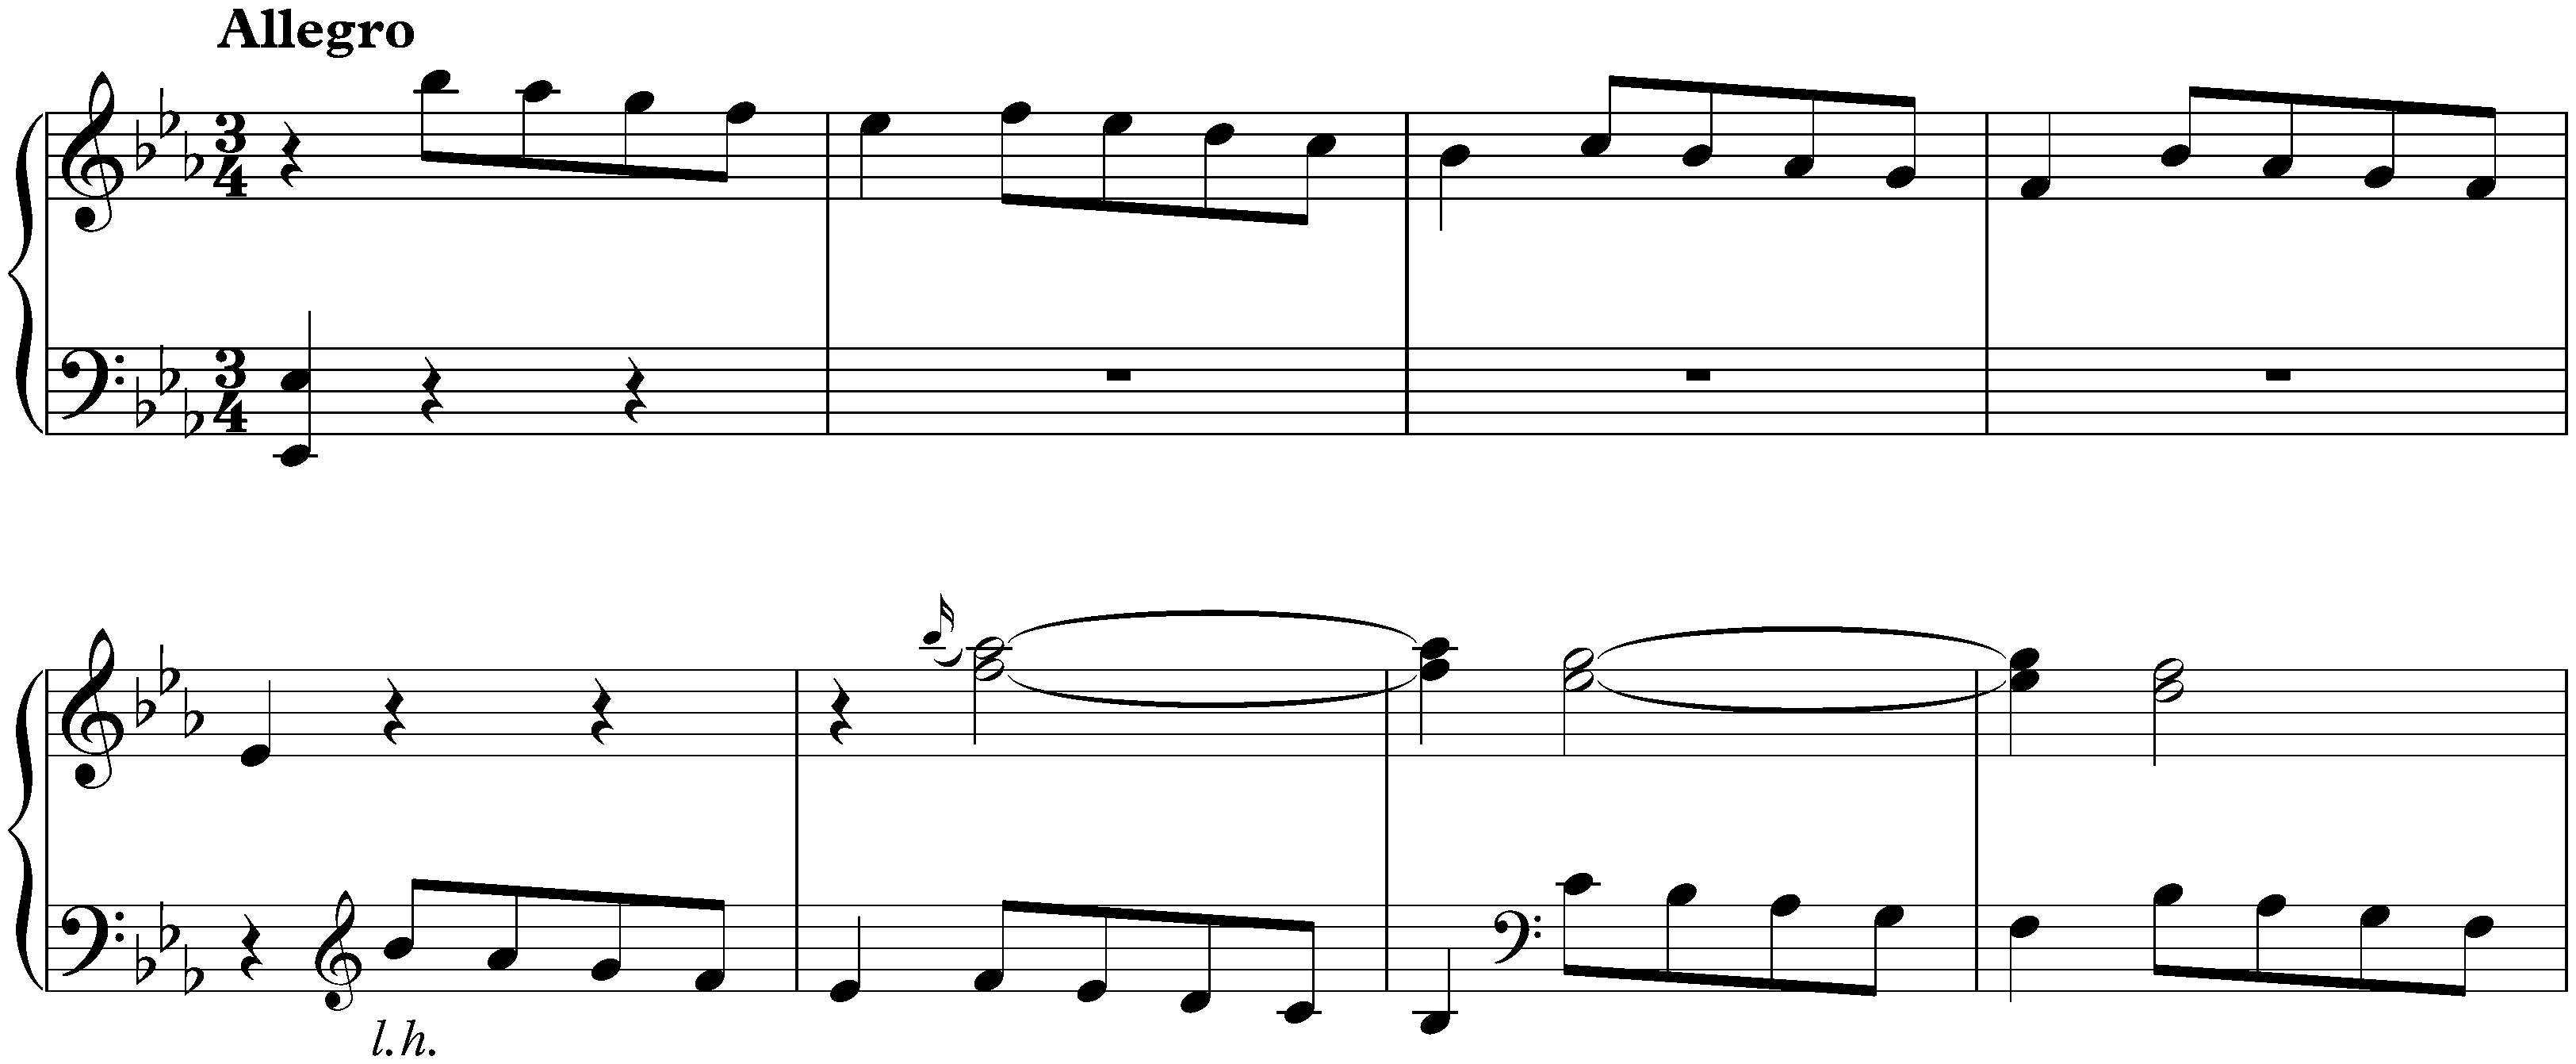 Sonata in E-flat major, K. 252